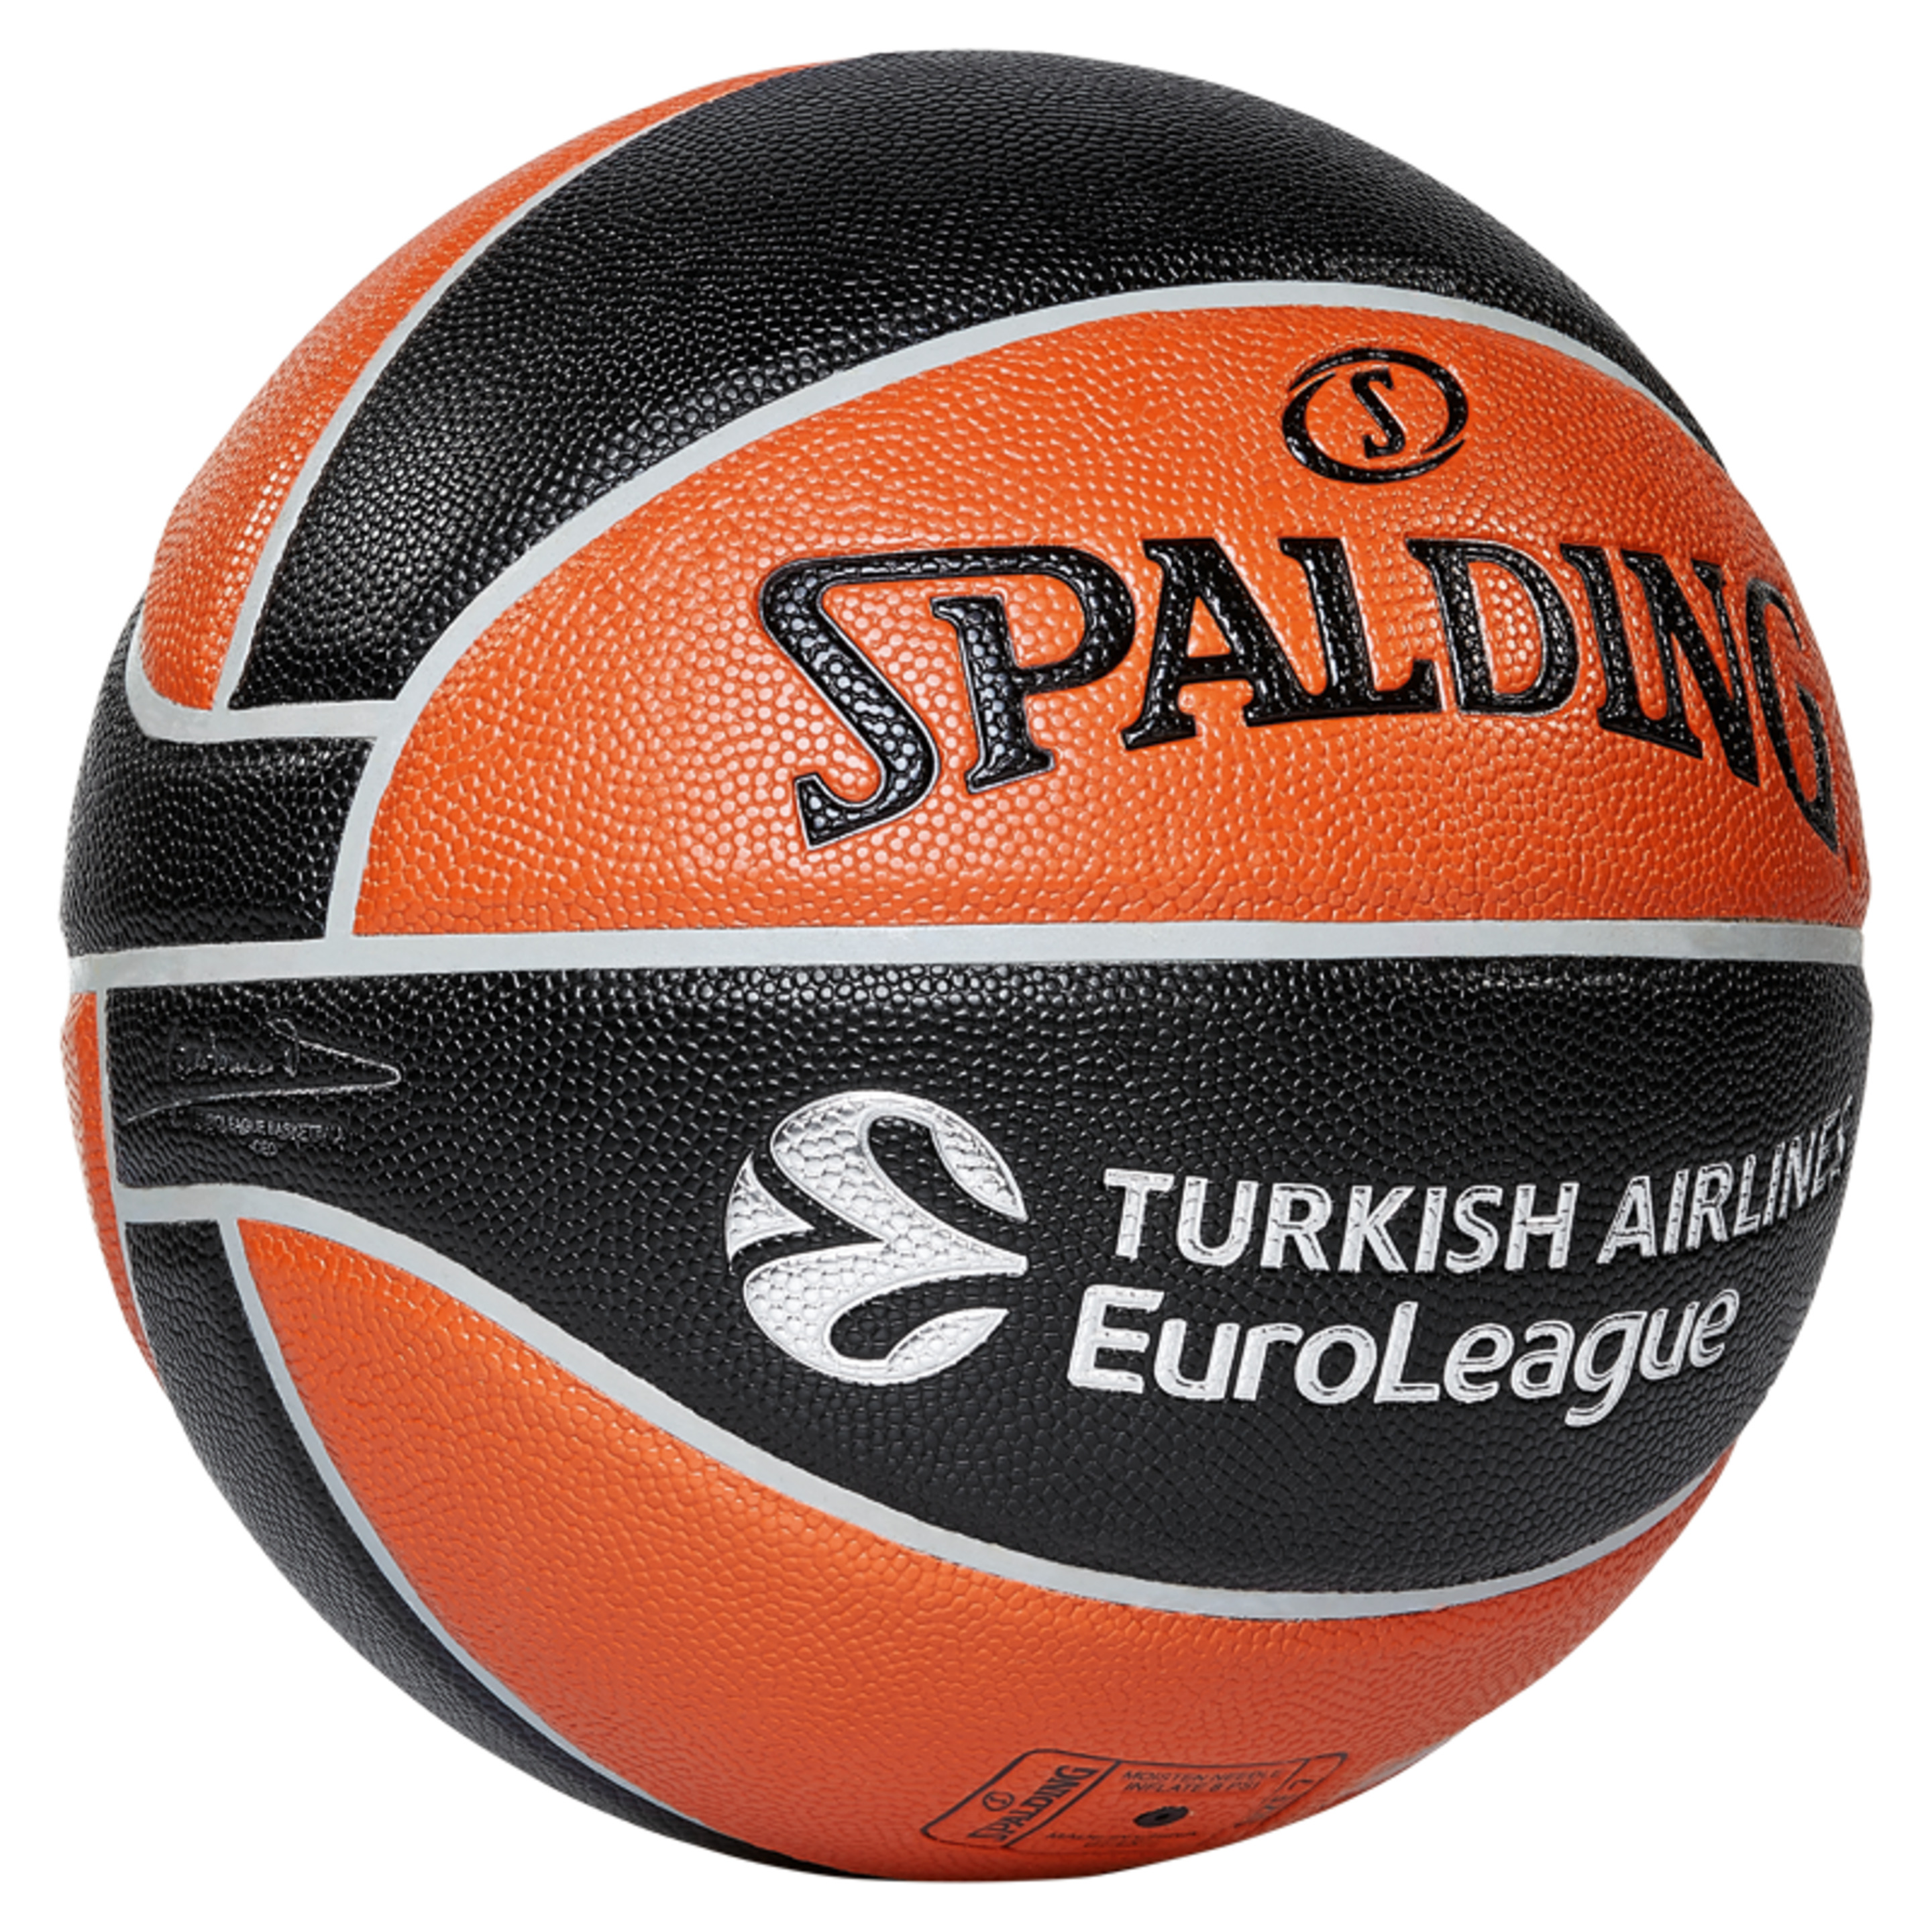 Balón De Baloncesto Euroleague Tf 500 In/out Sz. 7 (84-002z)